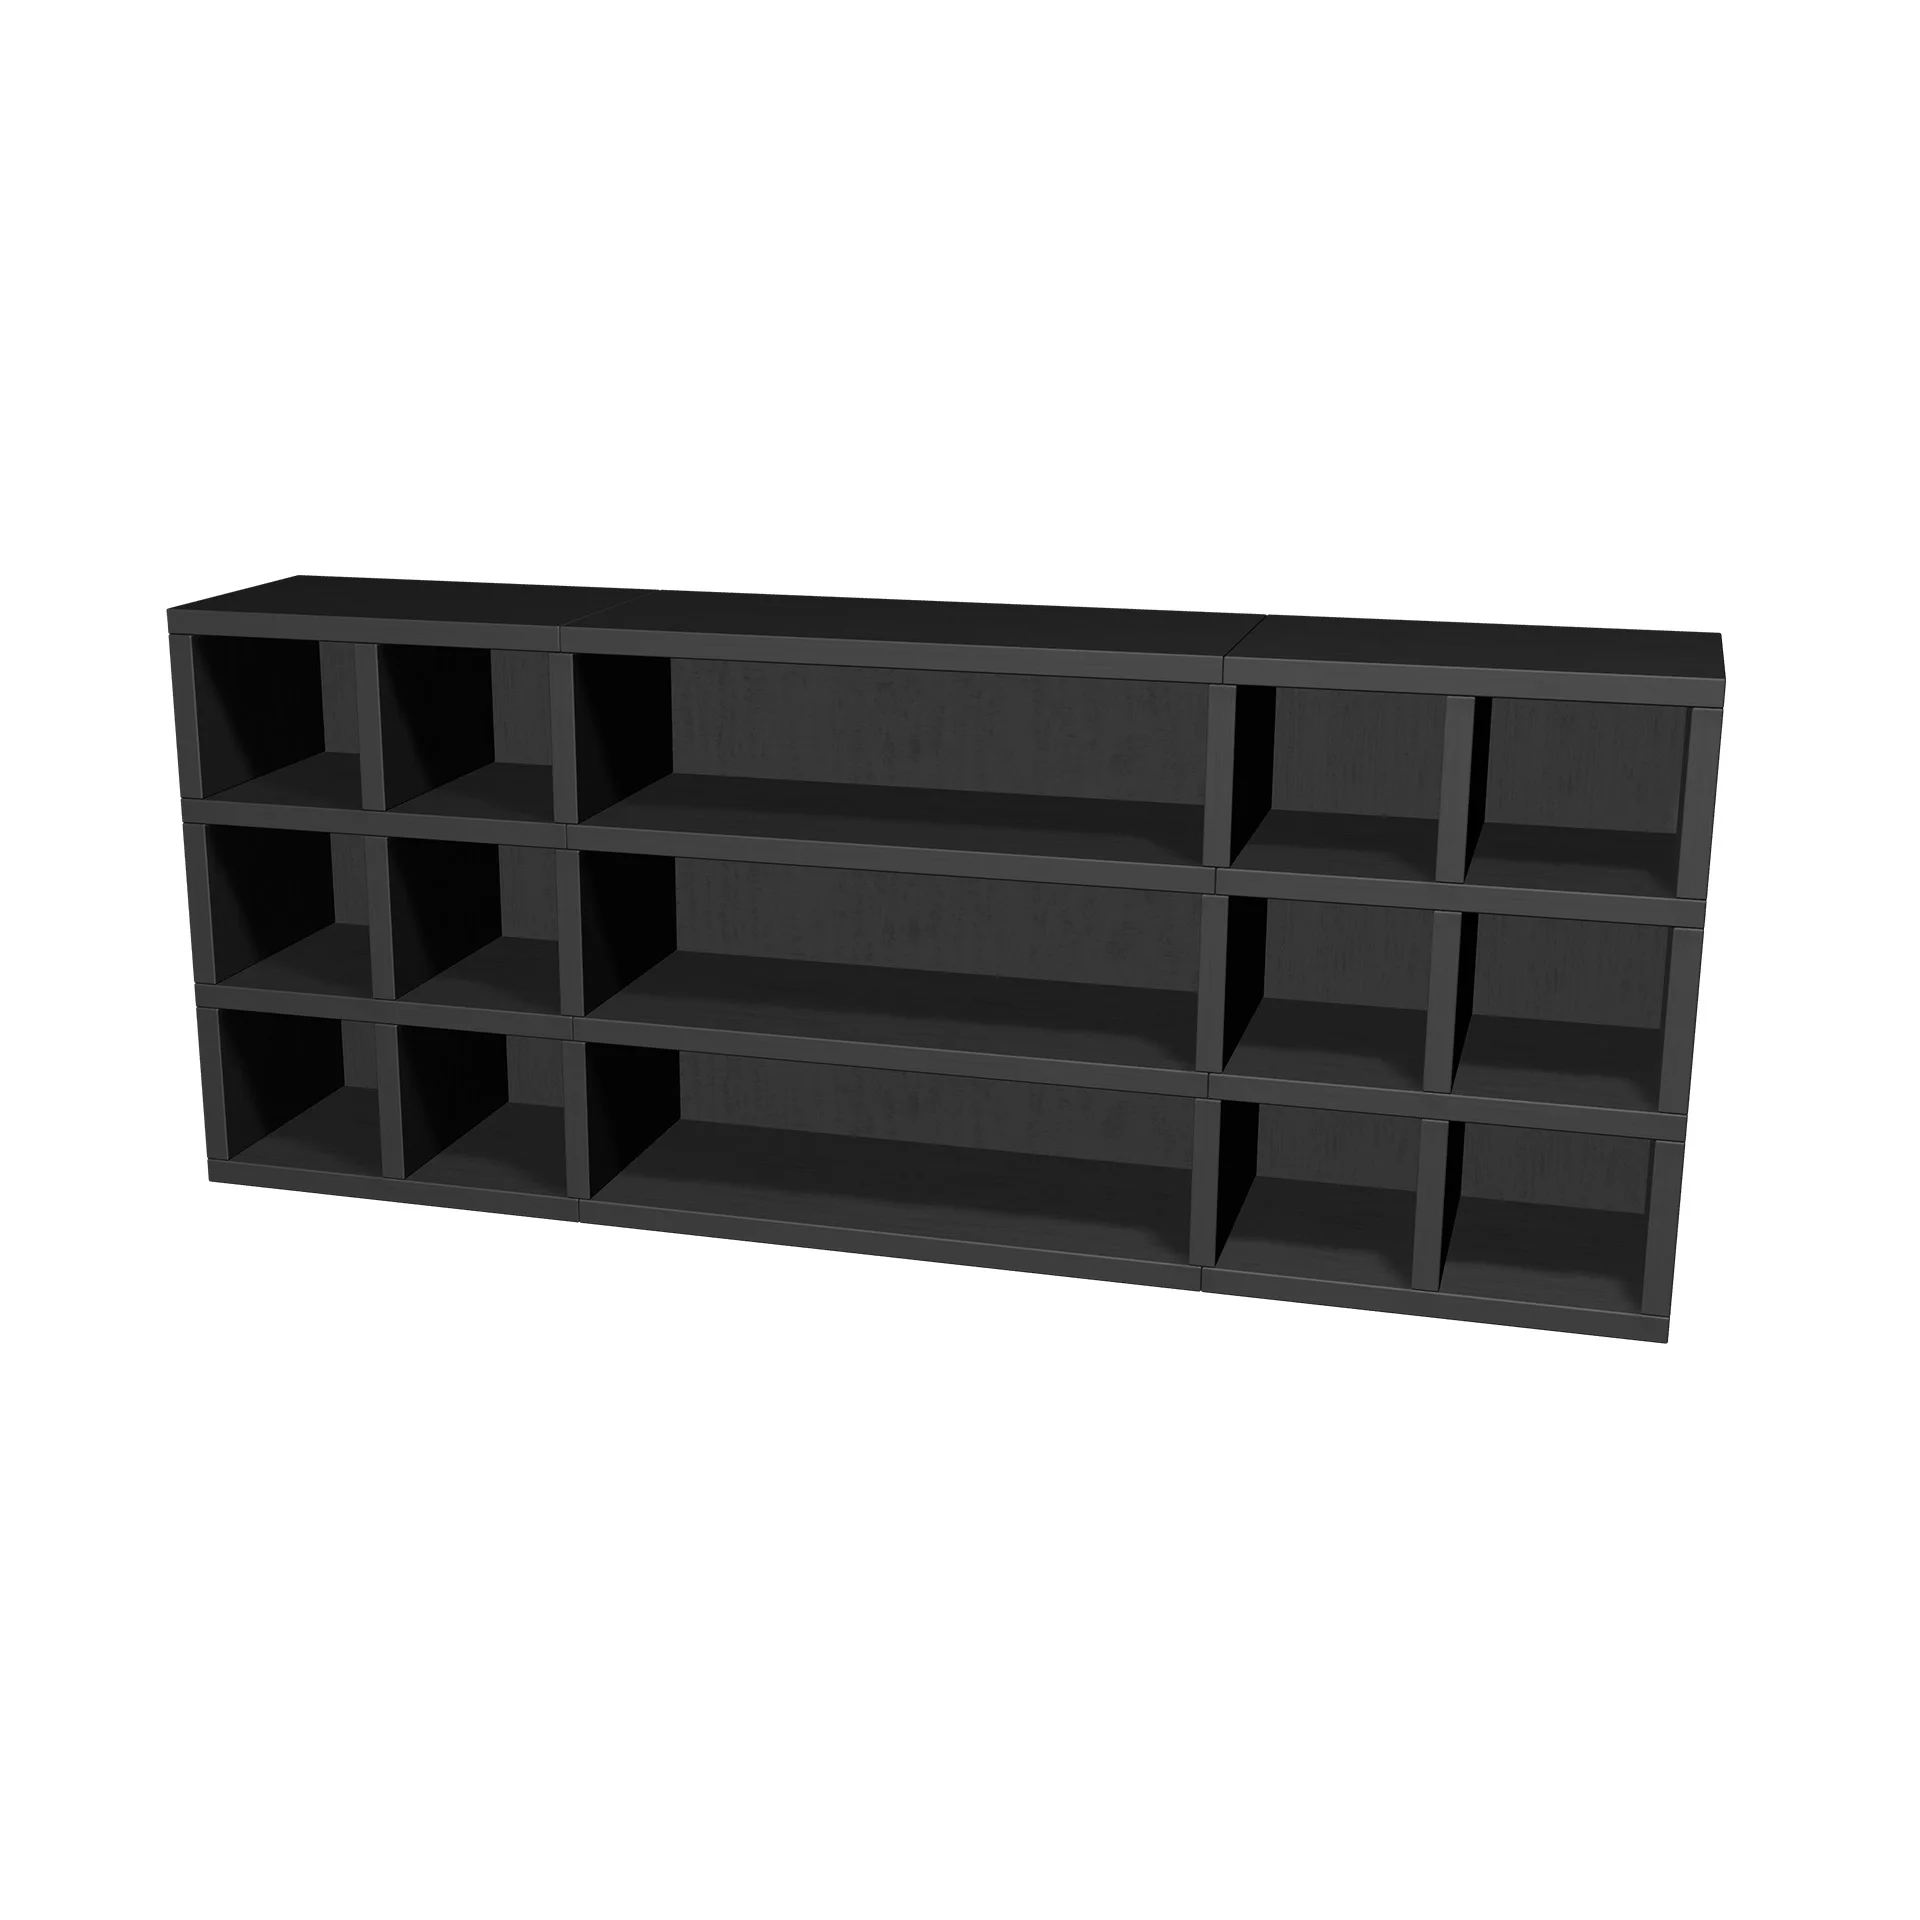 TSFC036 in black oak furniture board